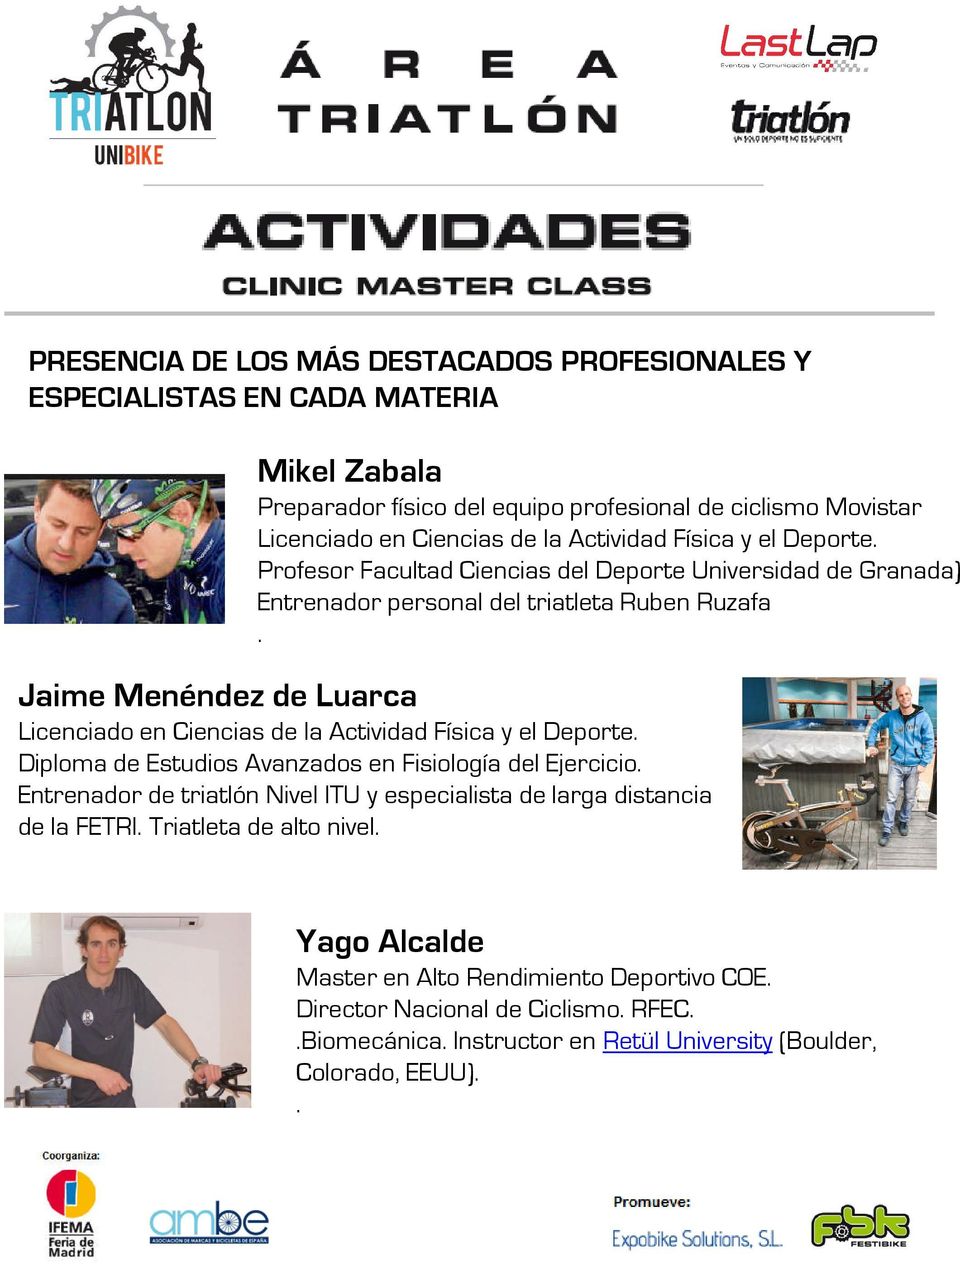 Jaime Menéndez de Luarca Licenciado en Ciencias de la Actividad Física y el Deporte. Diploma de Estudios Avanzados en Fisiología del Ejercicio.